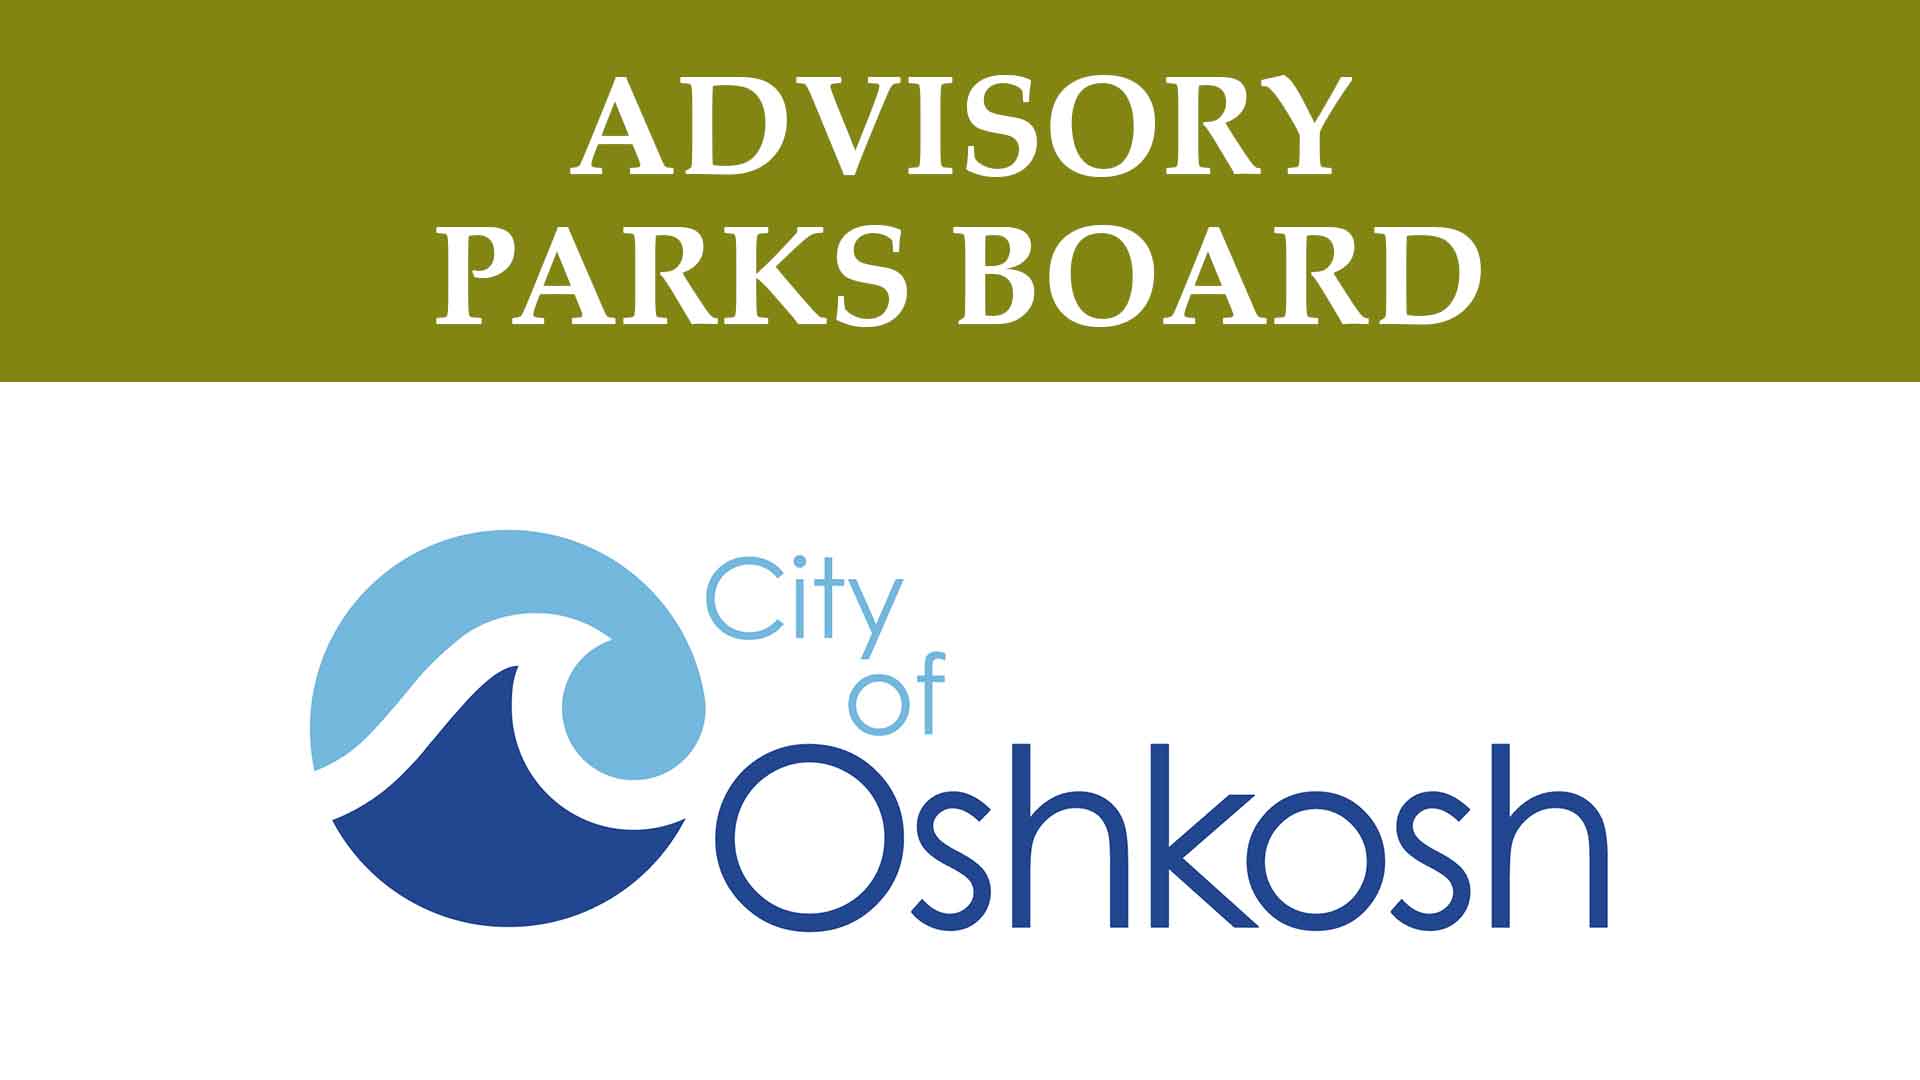 Advisory Parks Board